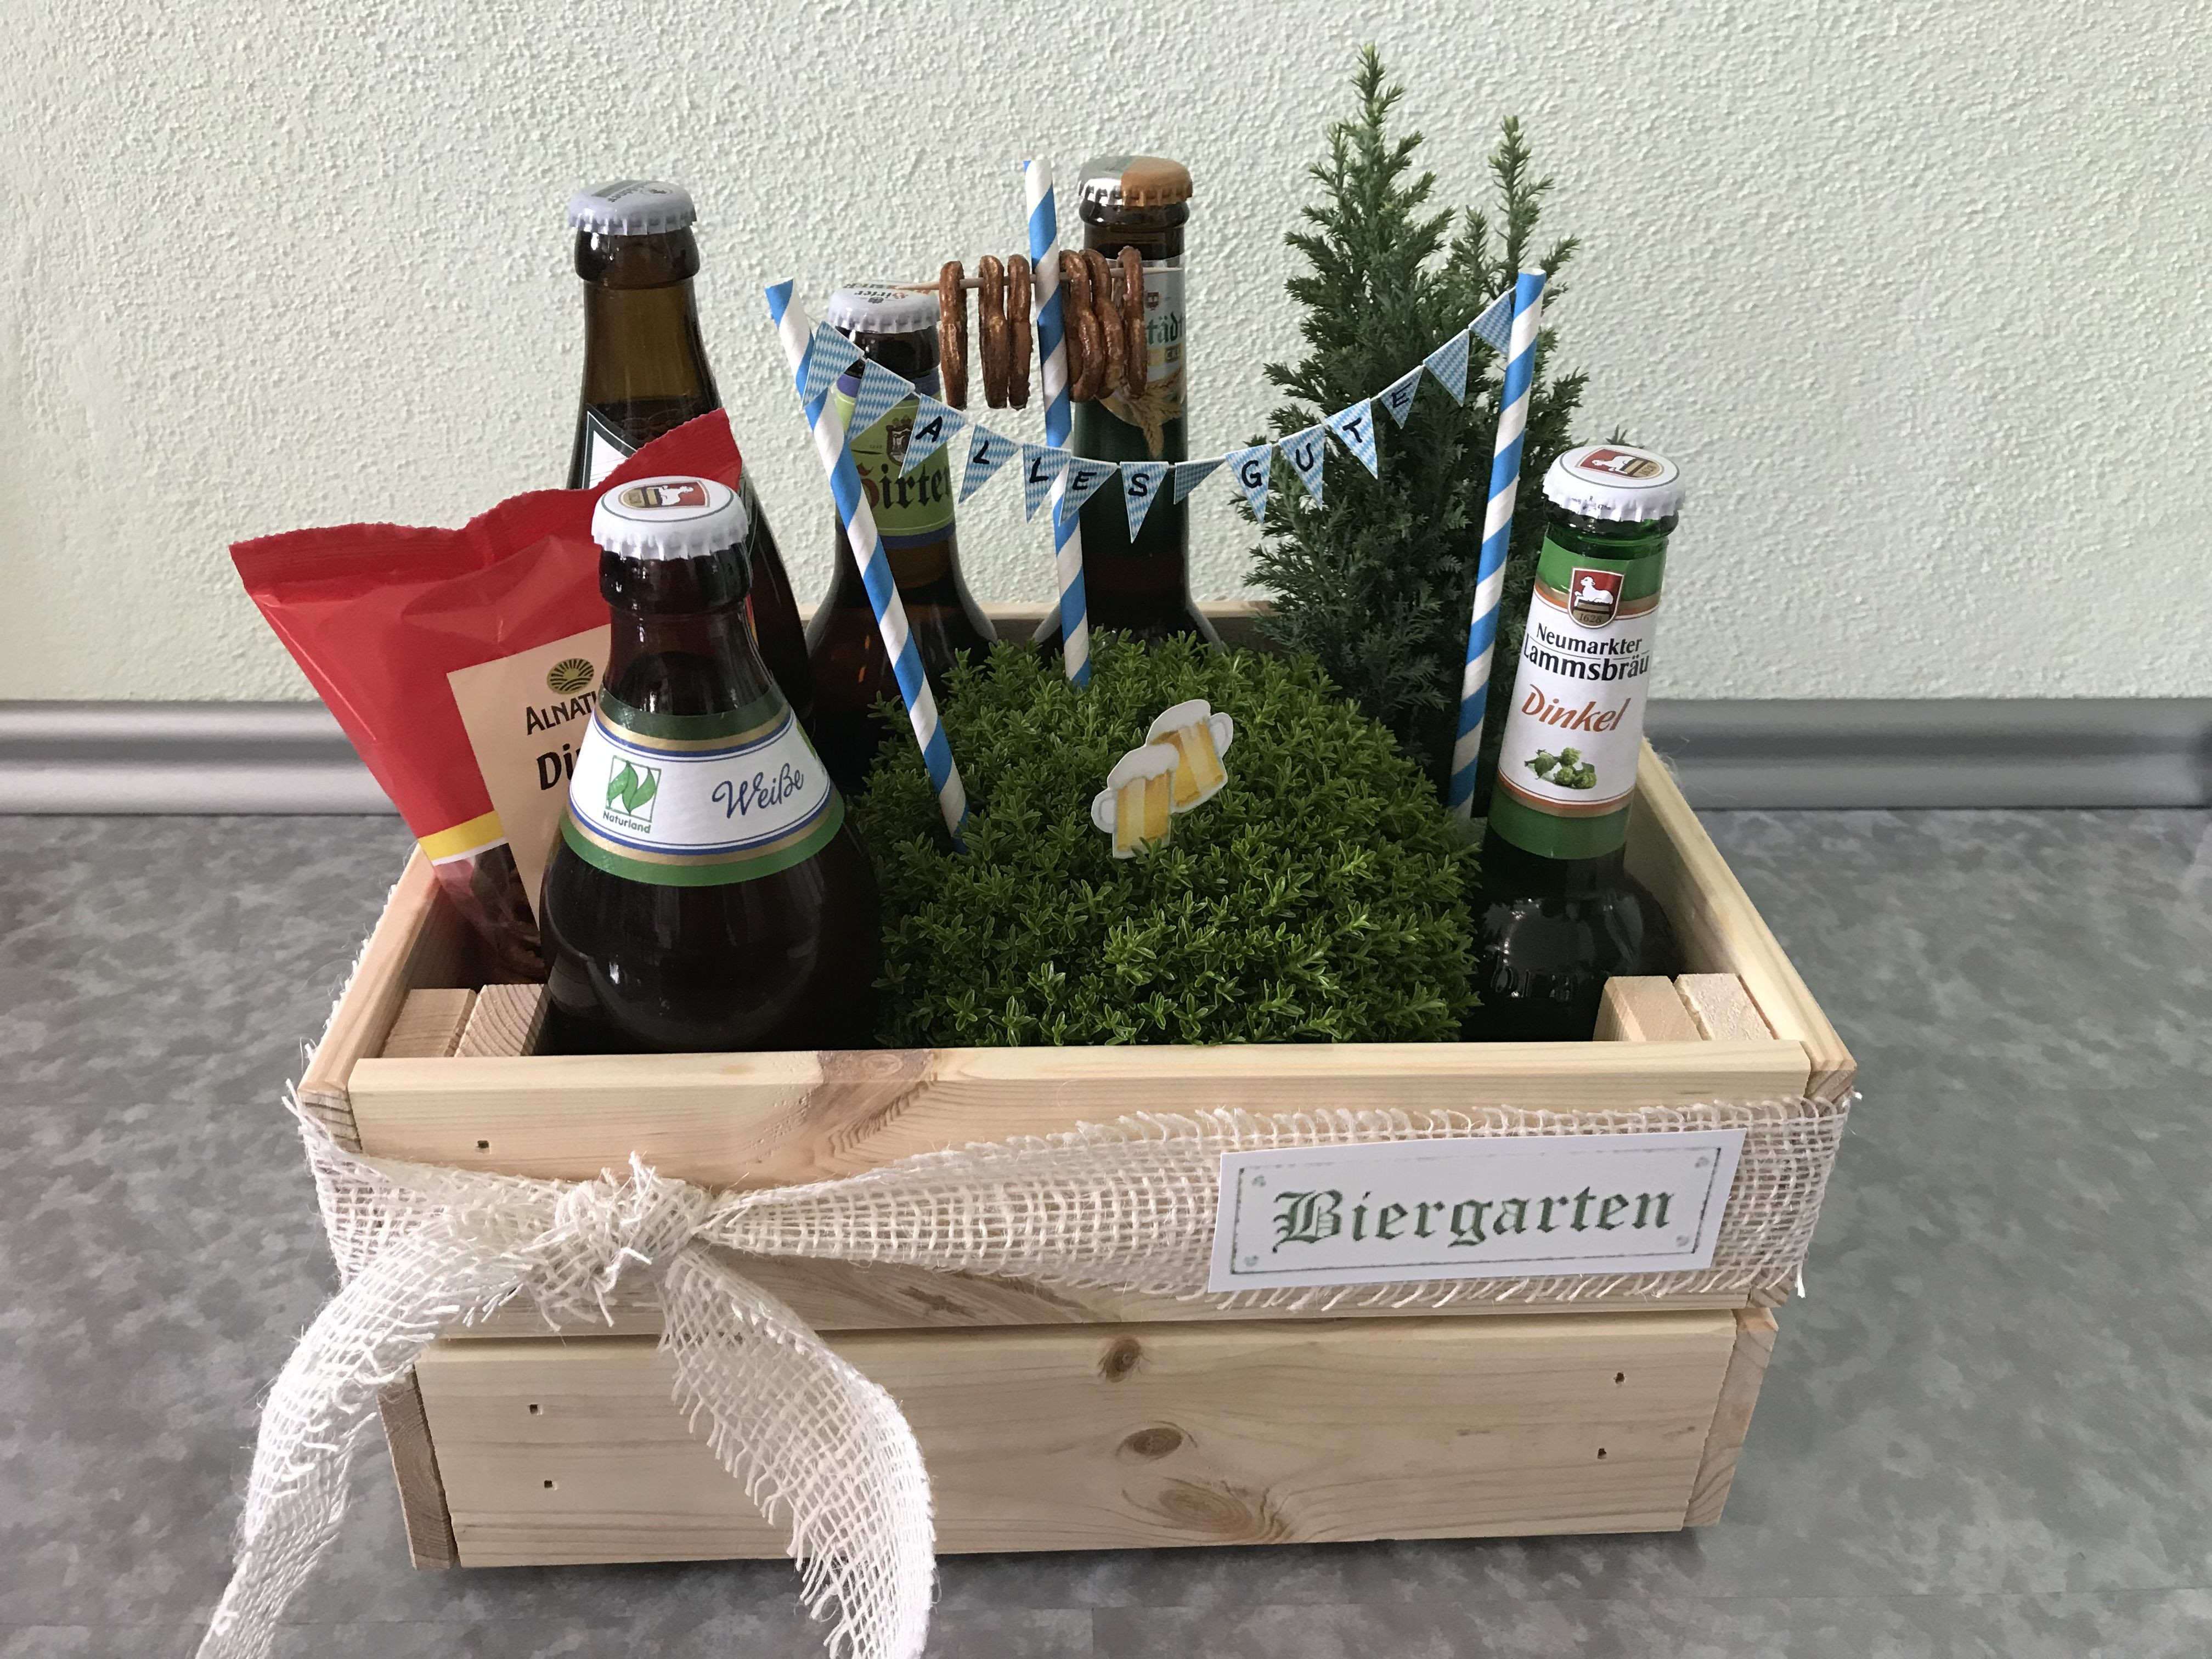 Geburtstagsgeschenke Ideen Für Männer
 Biergarten Geburtstagsgeschenk für Männer present for men